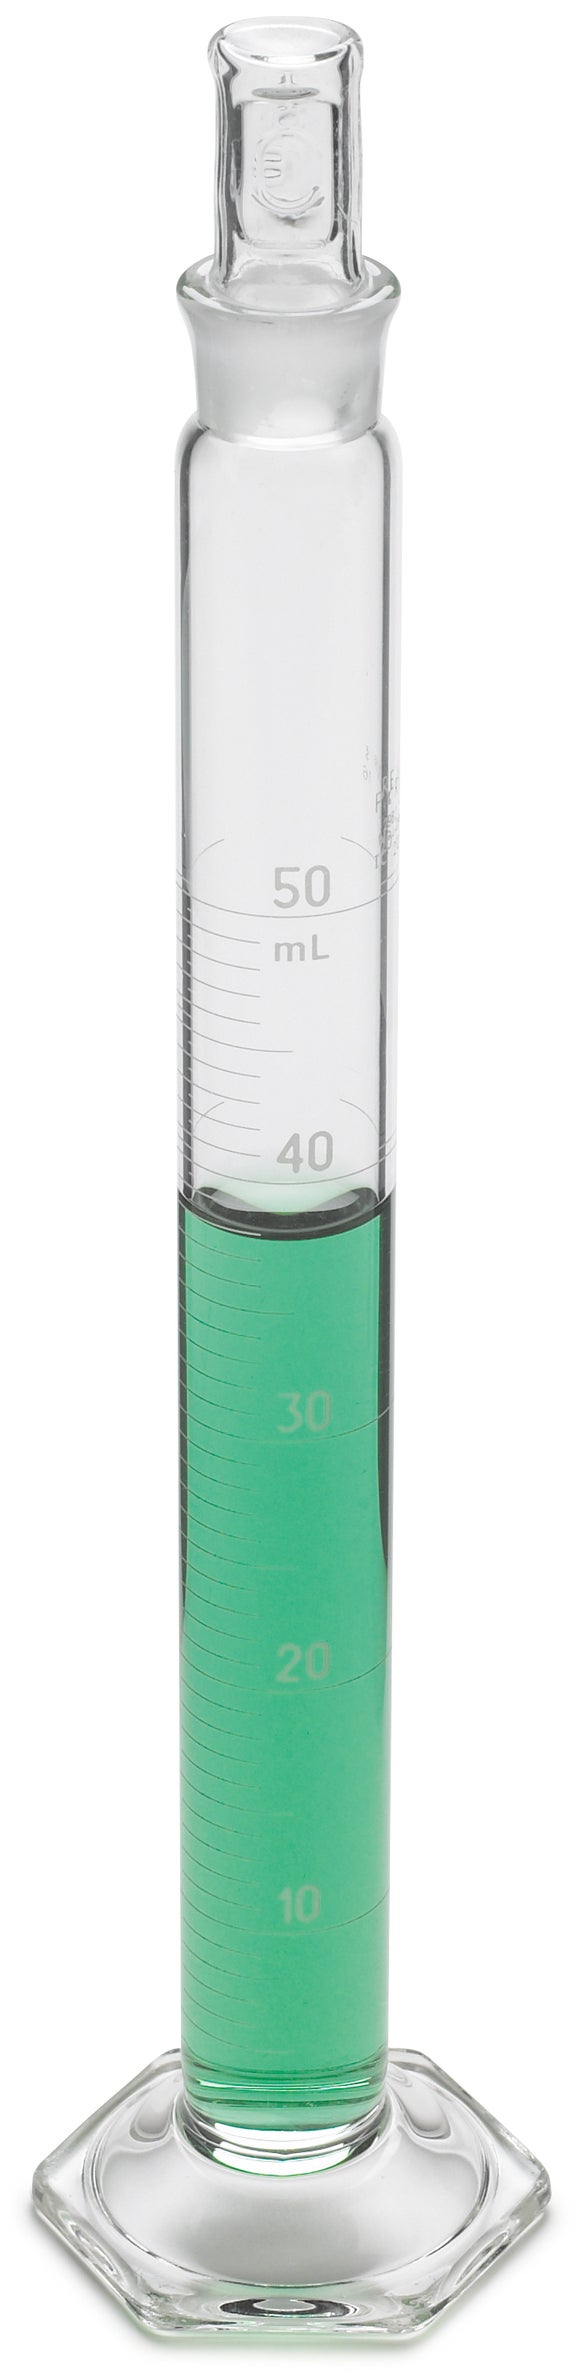 Zylinder, mit Skala, Glas; 50 mL ± 0,4 mL, Teilung 1,0 mL, Glasstopfen Nr. 16